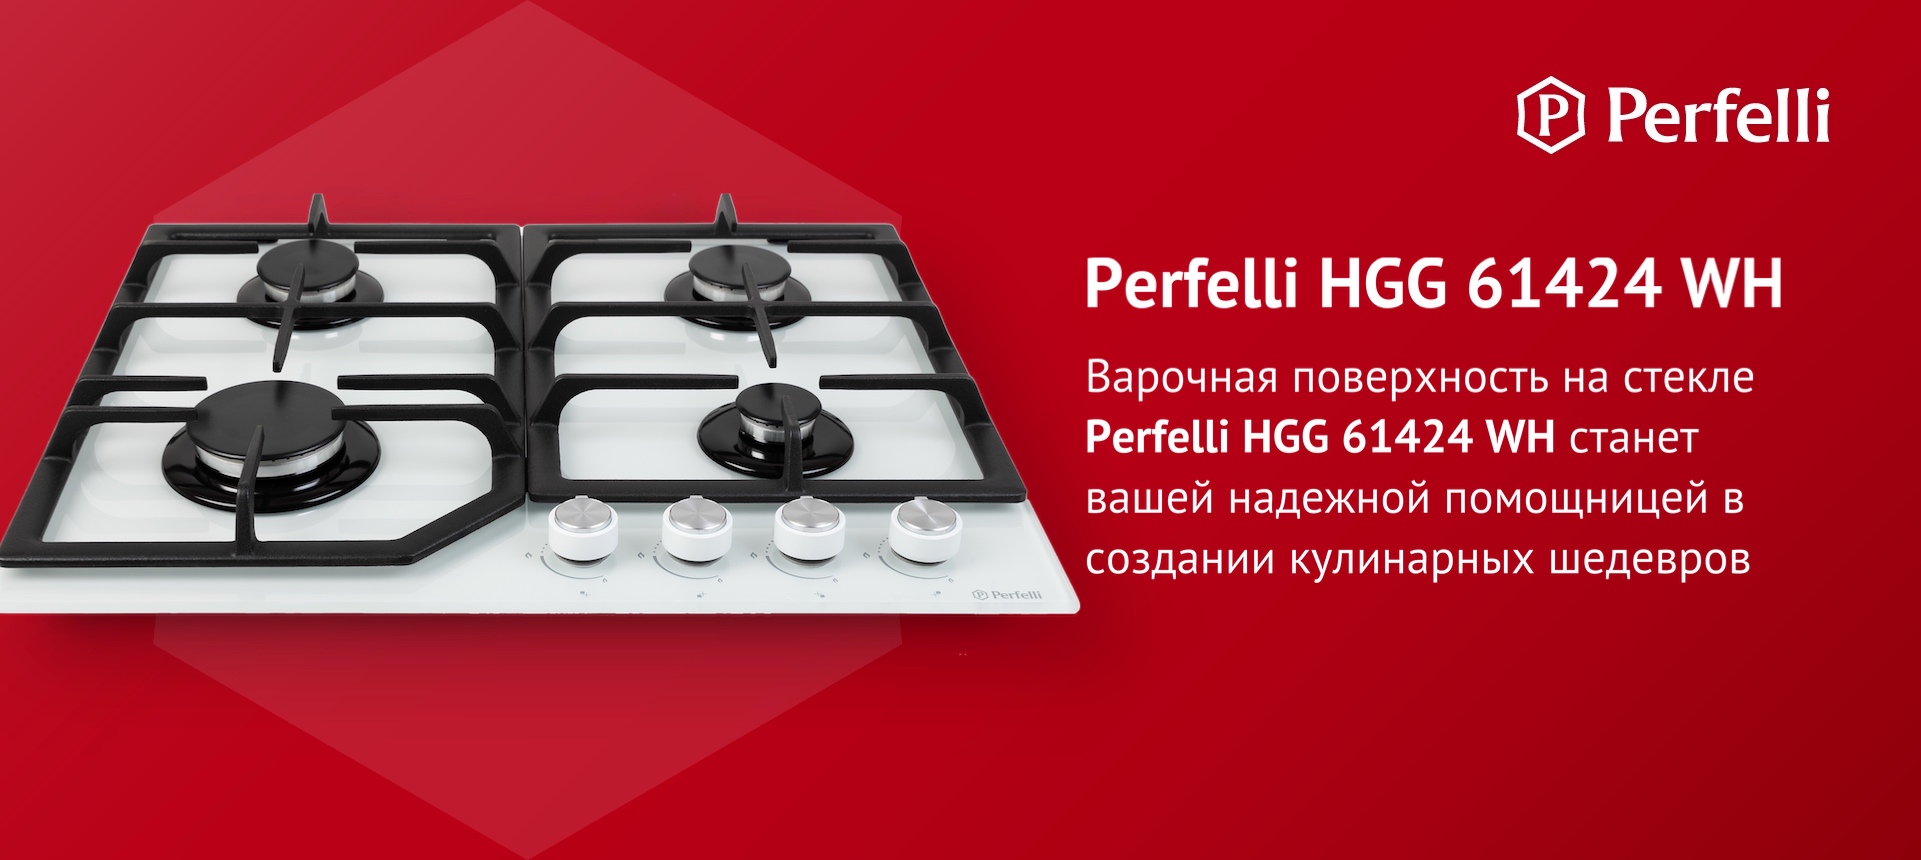 Варочная поверхность на стекле Perfelli HGG 61424 WH станет вашей надежной помощницей в создании кулинарных шедевров